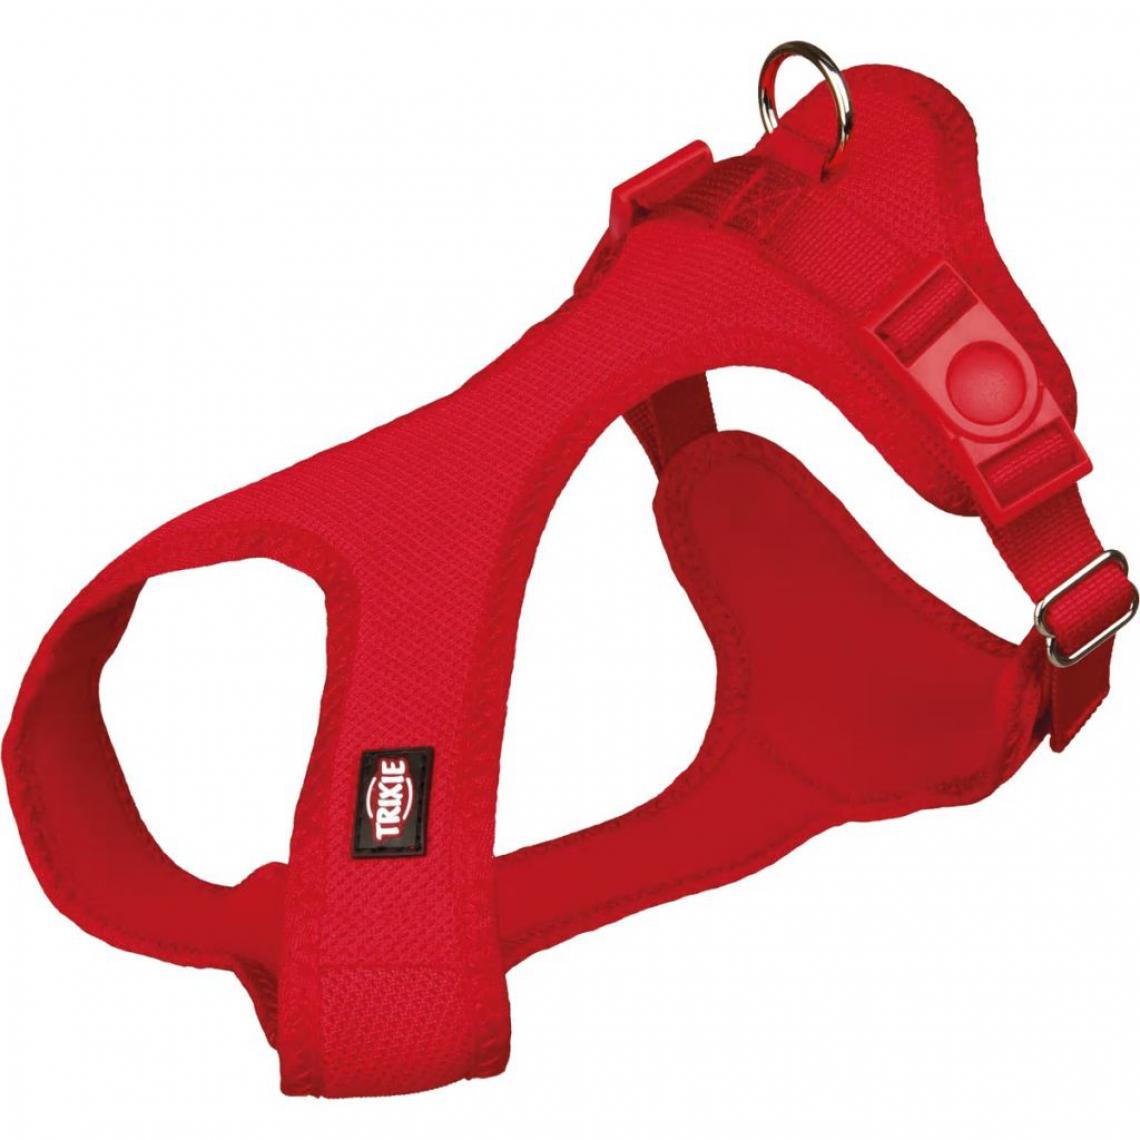 Trixie - TRIXIE Harnais soft S : 33 a 50cm - Rouge - Pour chien - Equipement de transport pour chien